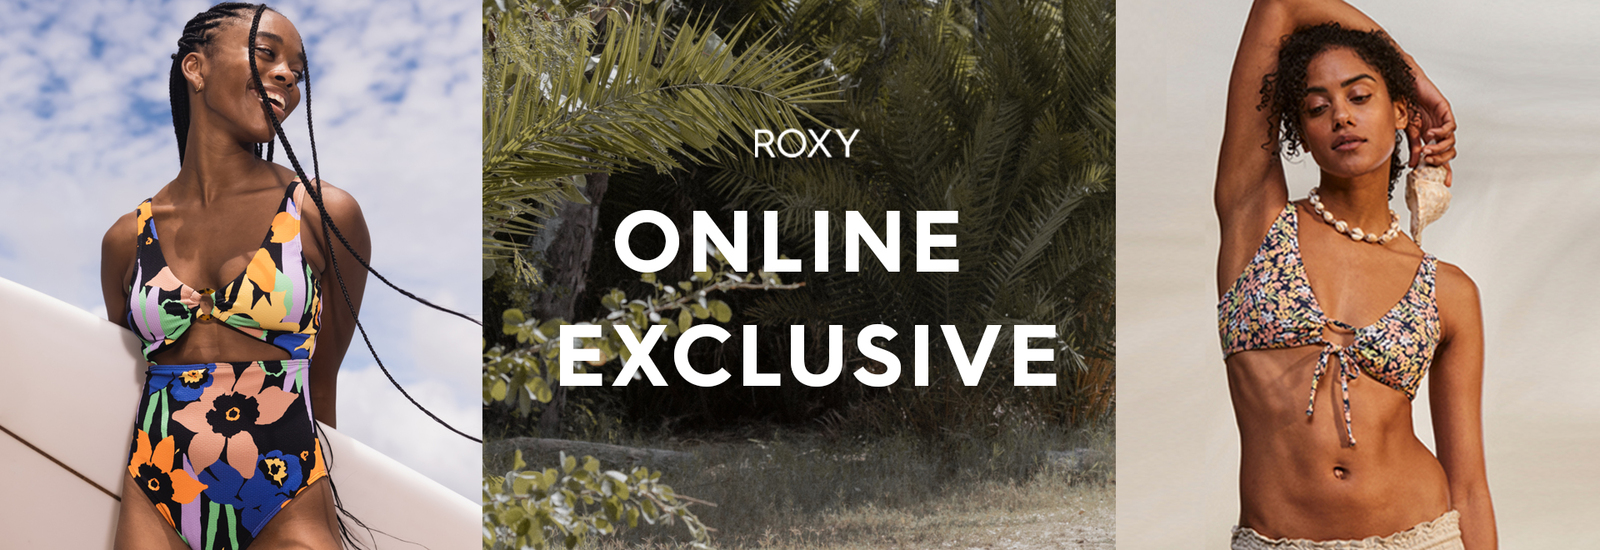 Roxy Online Exclusive